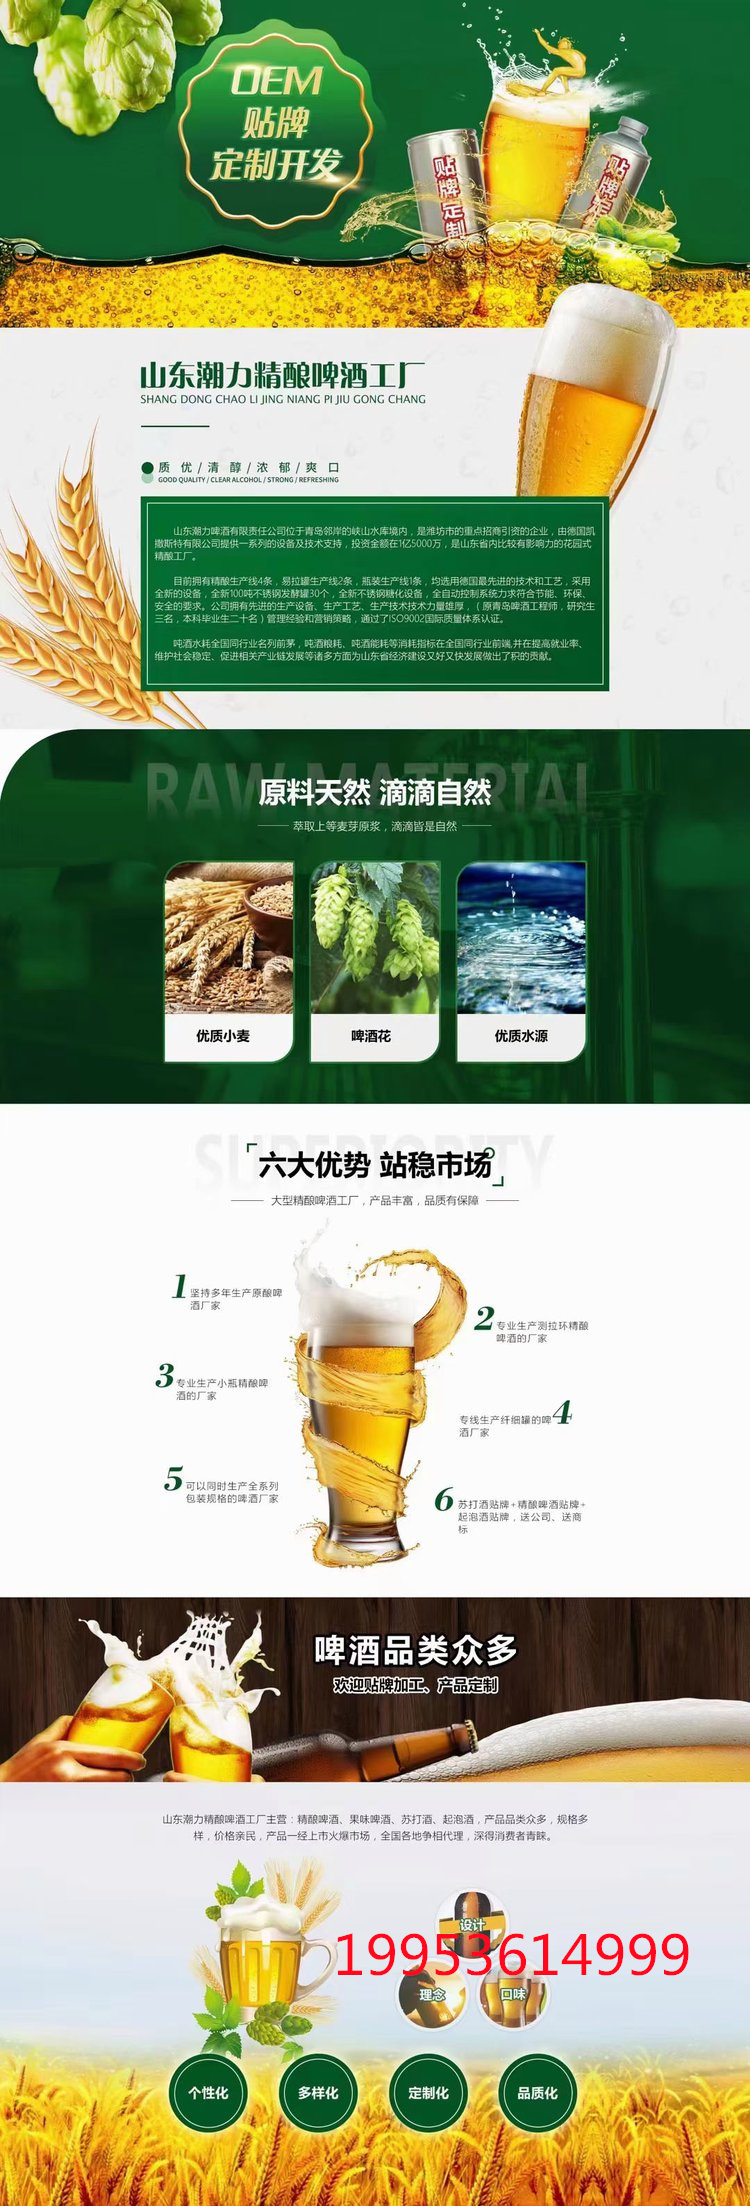 山东潍坊啤酒图片